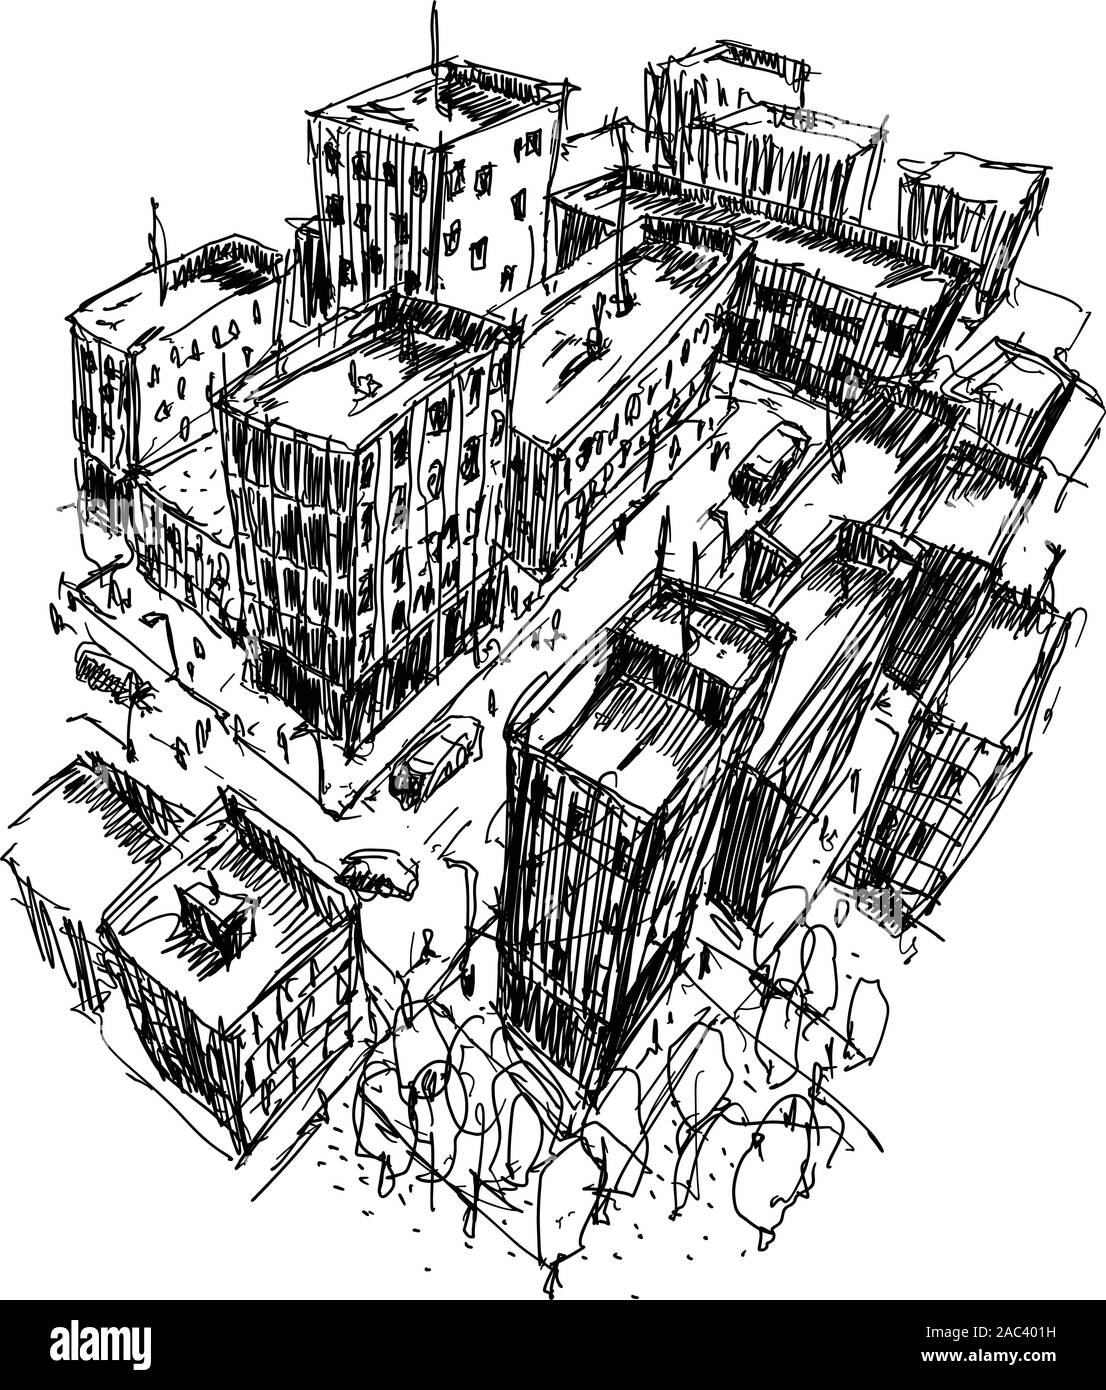 Disegnato a mano schizzo architettonico di una città moderna con alti edifici e persone nelle strade Illustrazione Vettoriale